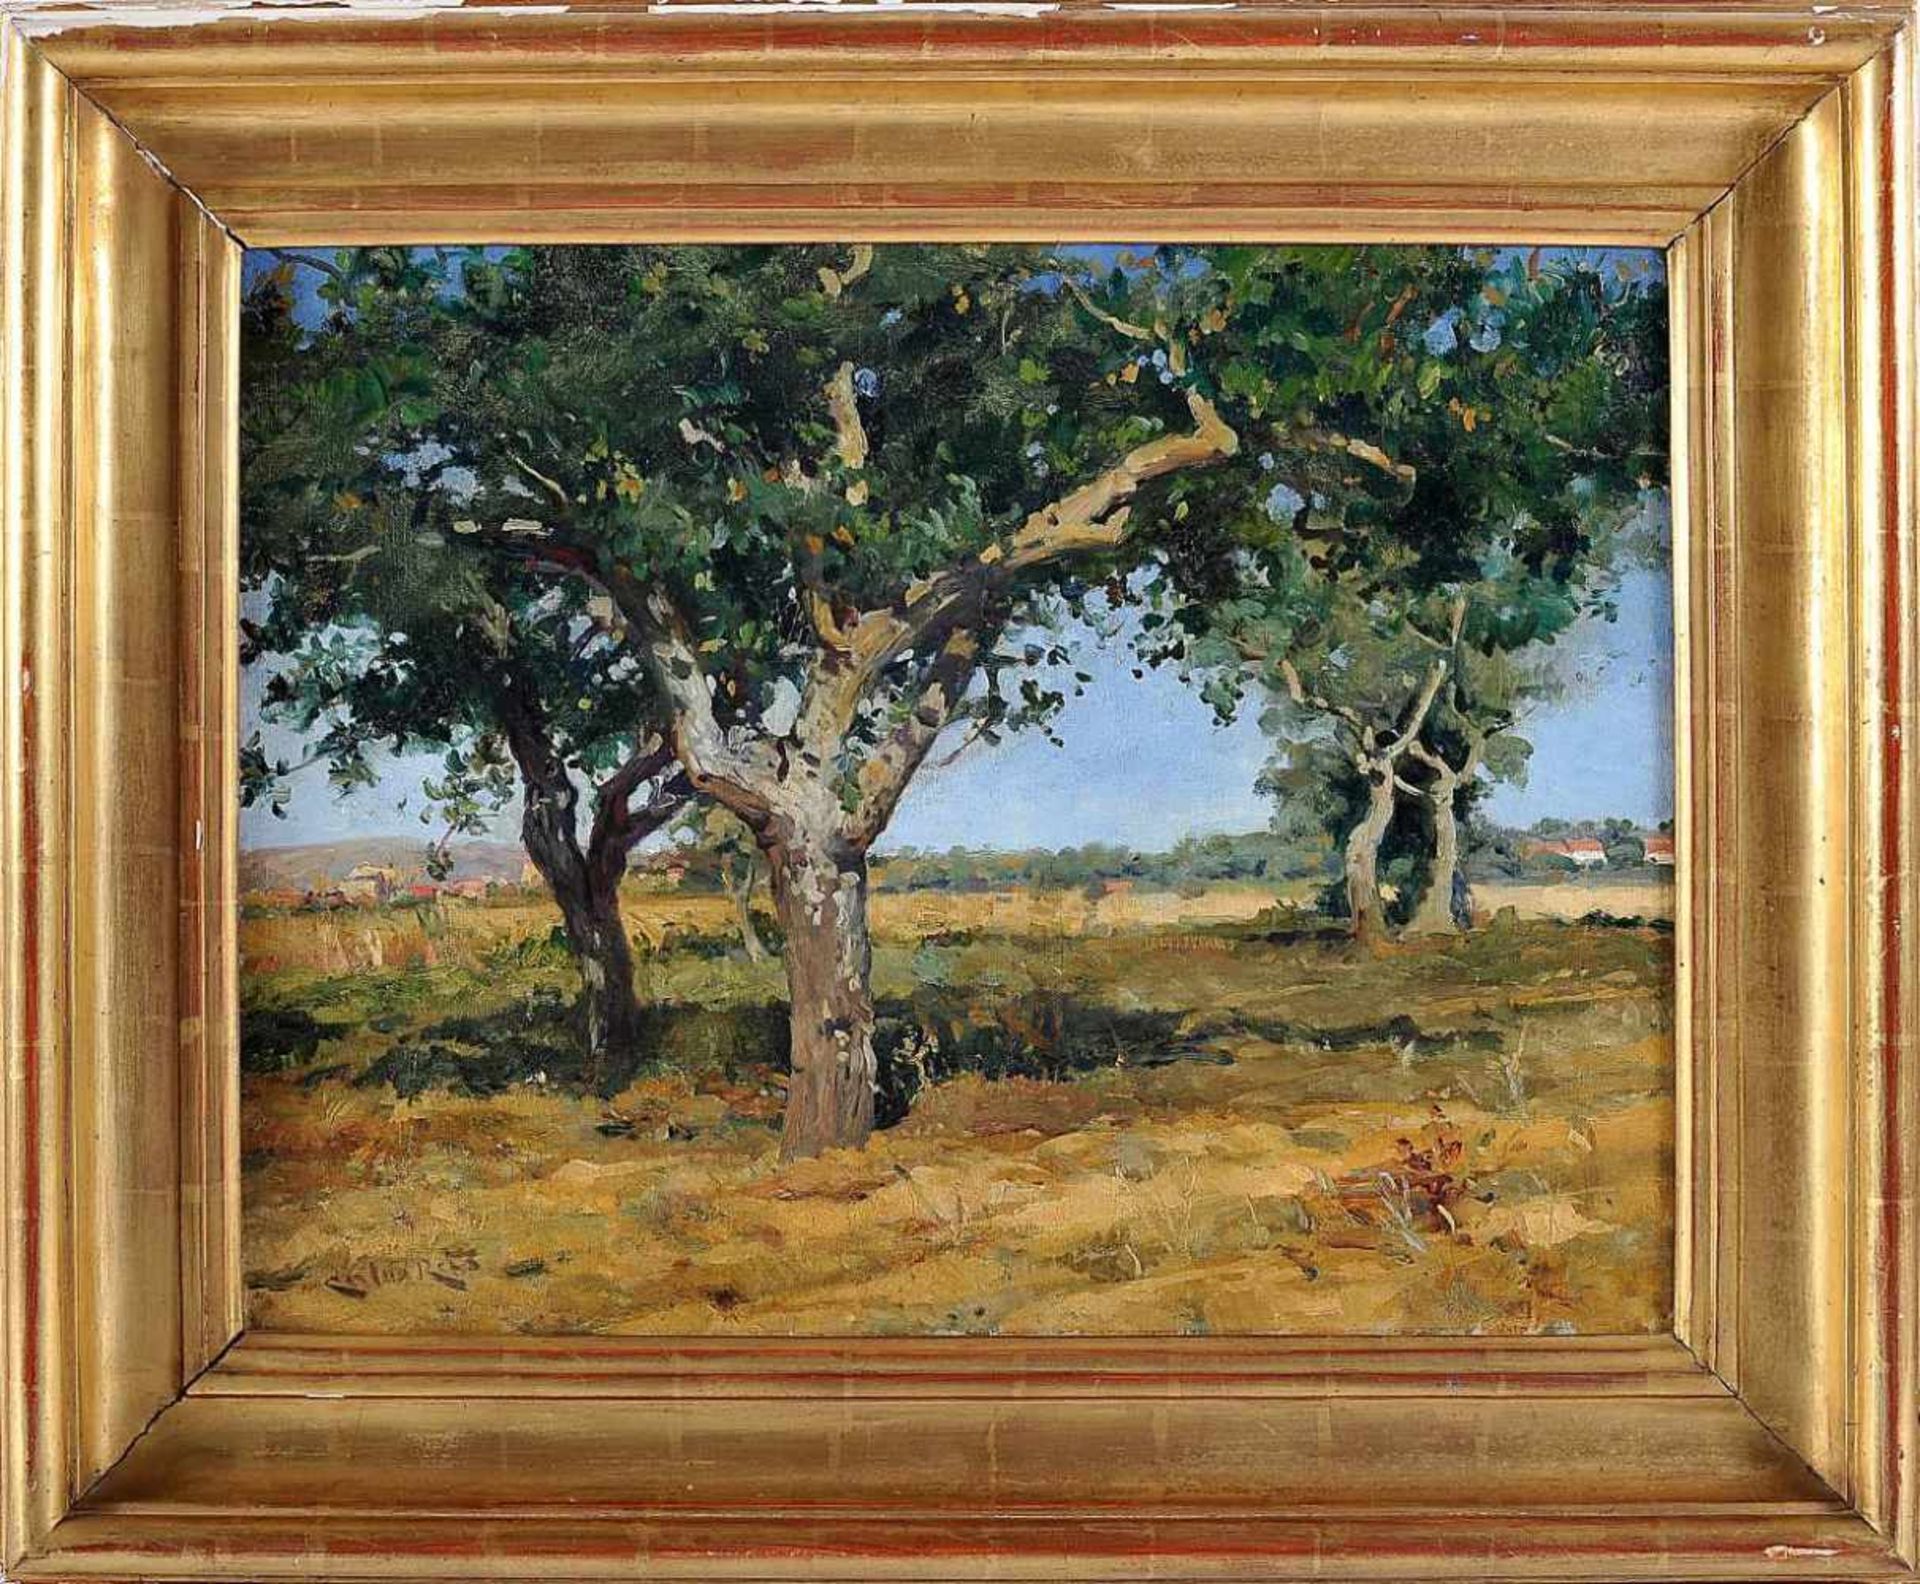 CARLOS REIS - 1863-1940CARLOS REIS - 1863-1940, Landscape in Lousã, oil on canvas, relined,